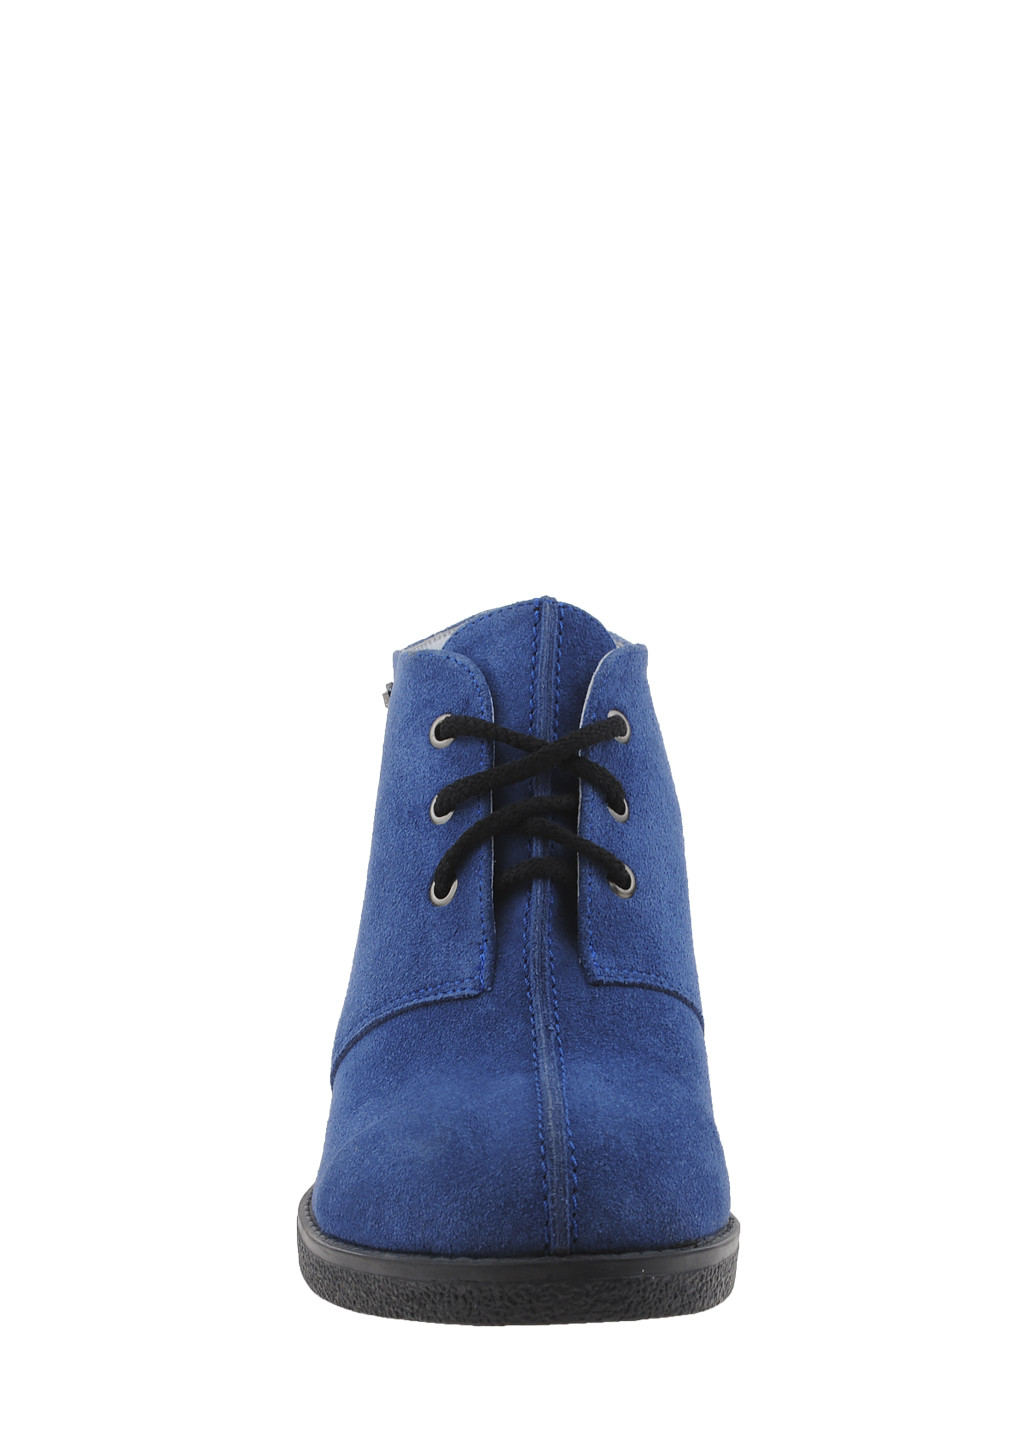 Осенние ботинки r1806-11 голубой Amedea из натуральной замши